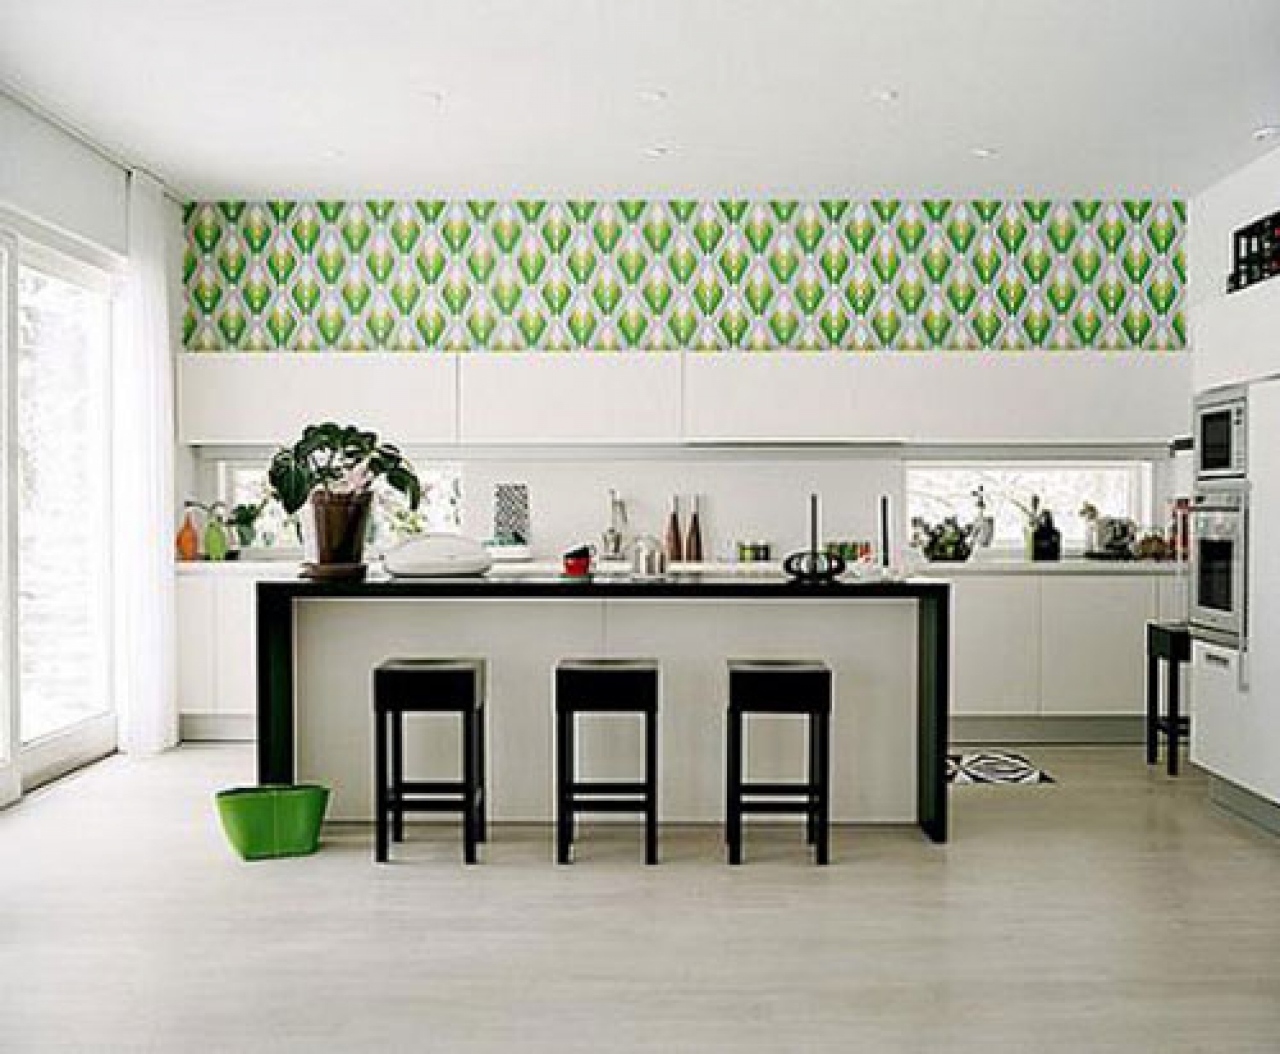 [41+] Modern Kitchen Wallpaper Ideas on WallpaperSafari